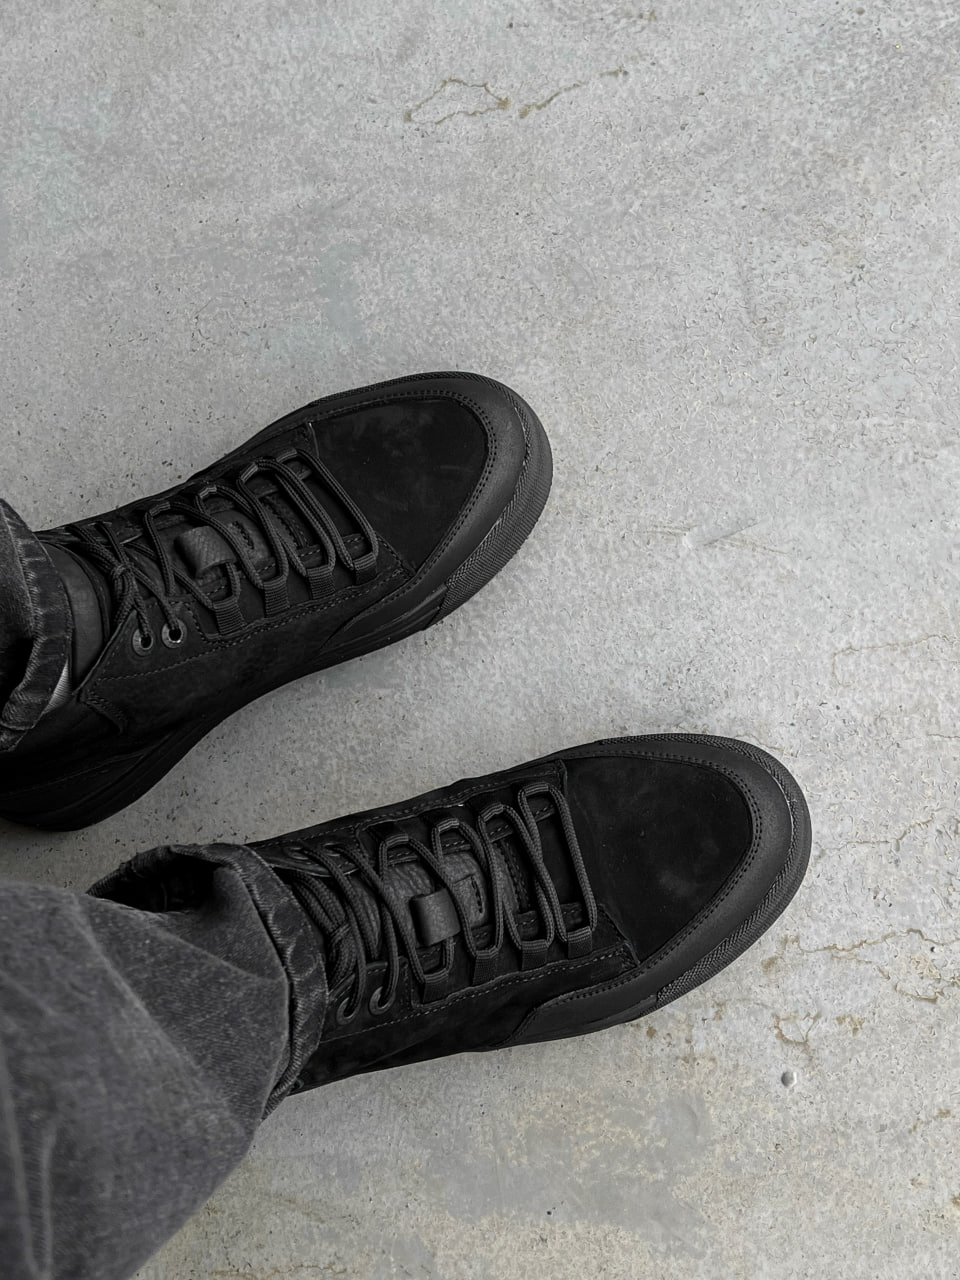 Ботинки зимние мужские Reload - Frost, черный нубук - Фото 3